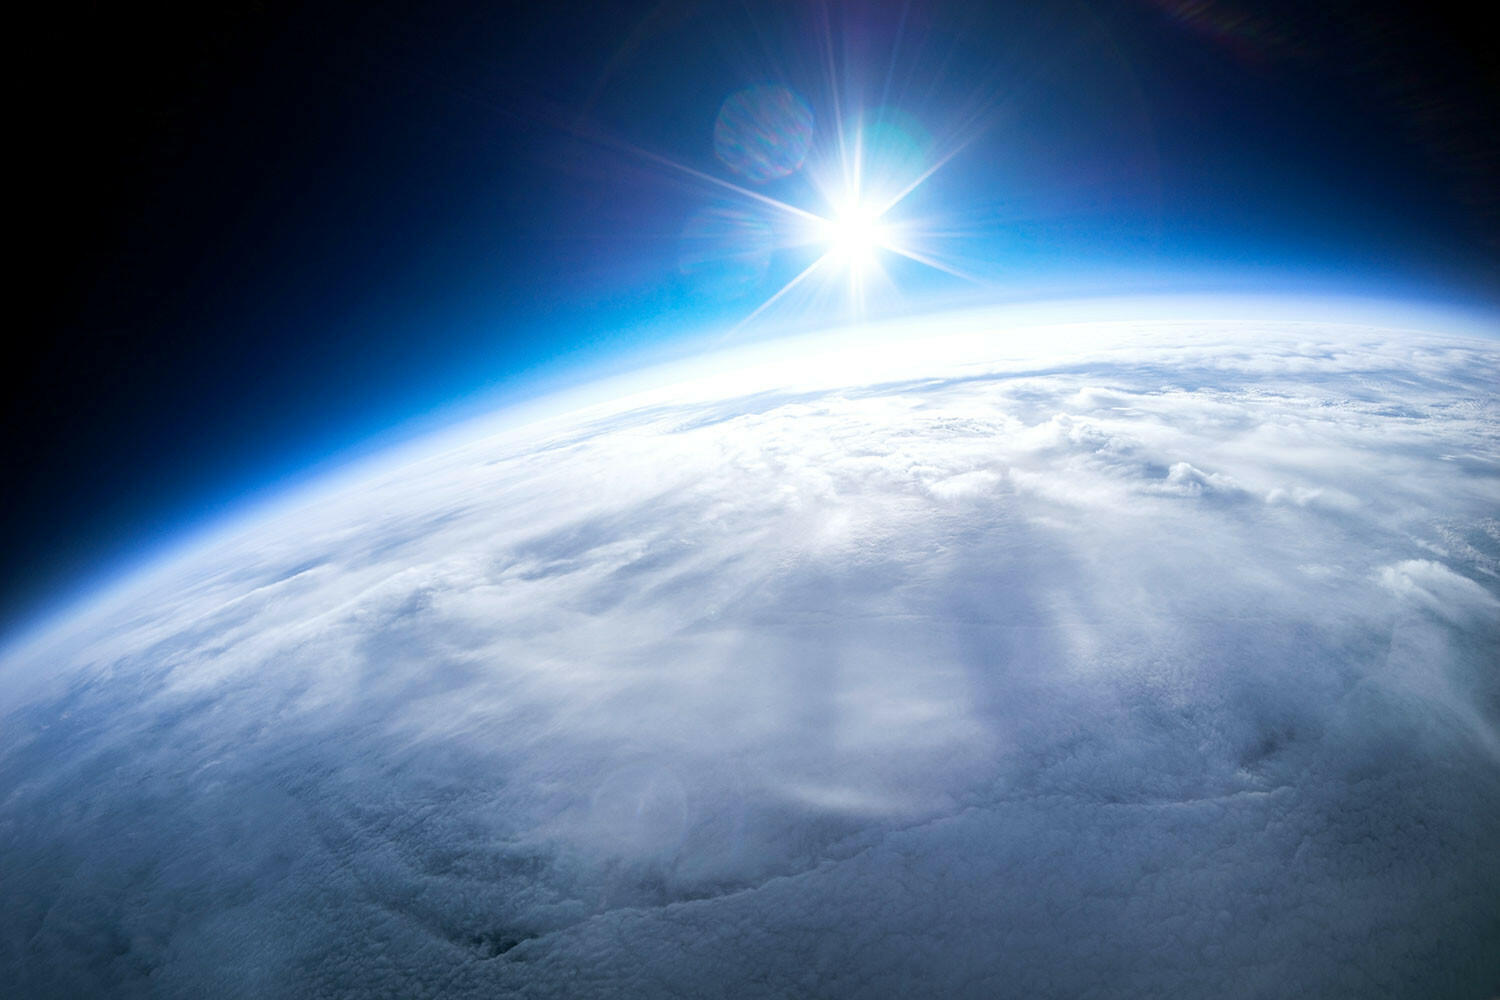 Nêu dẫn chứng về vai trò của khí quyển đối với sự sống trên Trái Đất